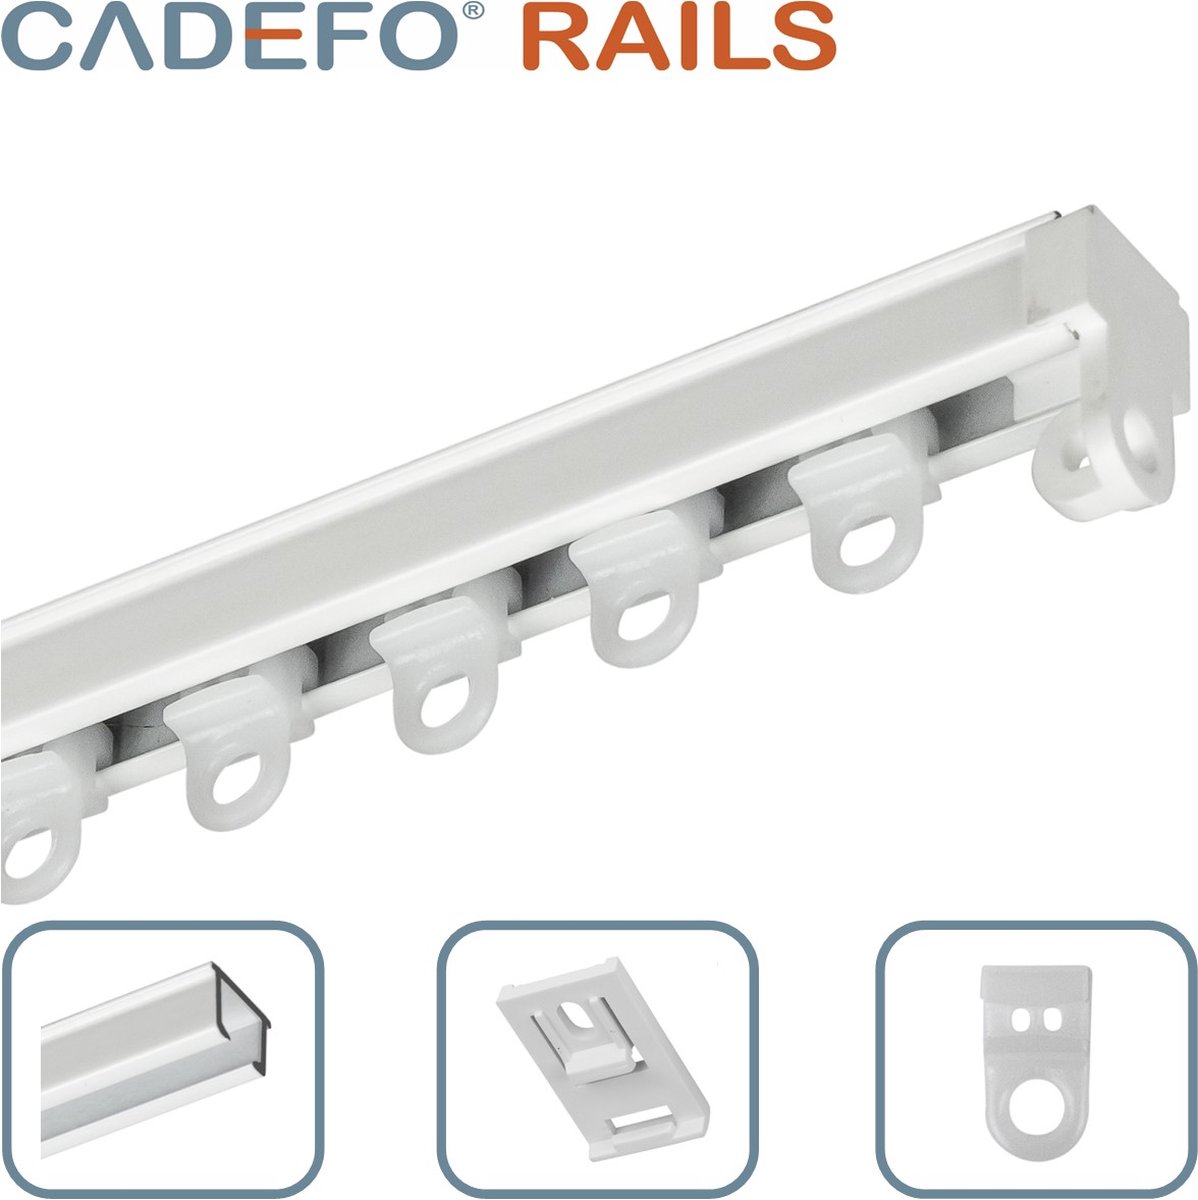 CADEFO RAILS (301 - 350 cm) Gordijnrails - Compleet op maat! - UIT 1 STUK - Leverbaar tot 6 meter - Plafondbevestiging - Lengte 302 cm